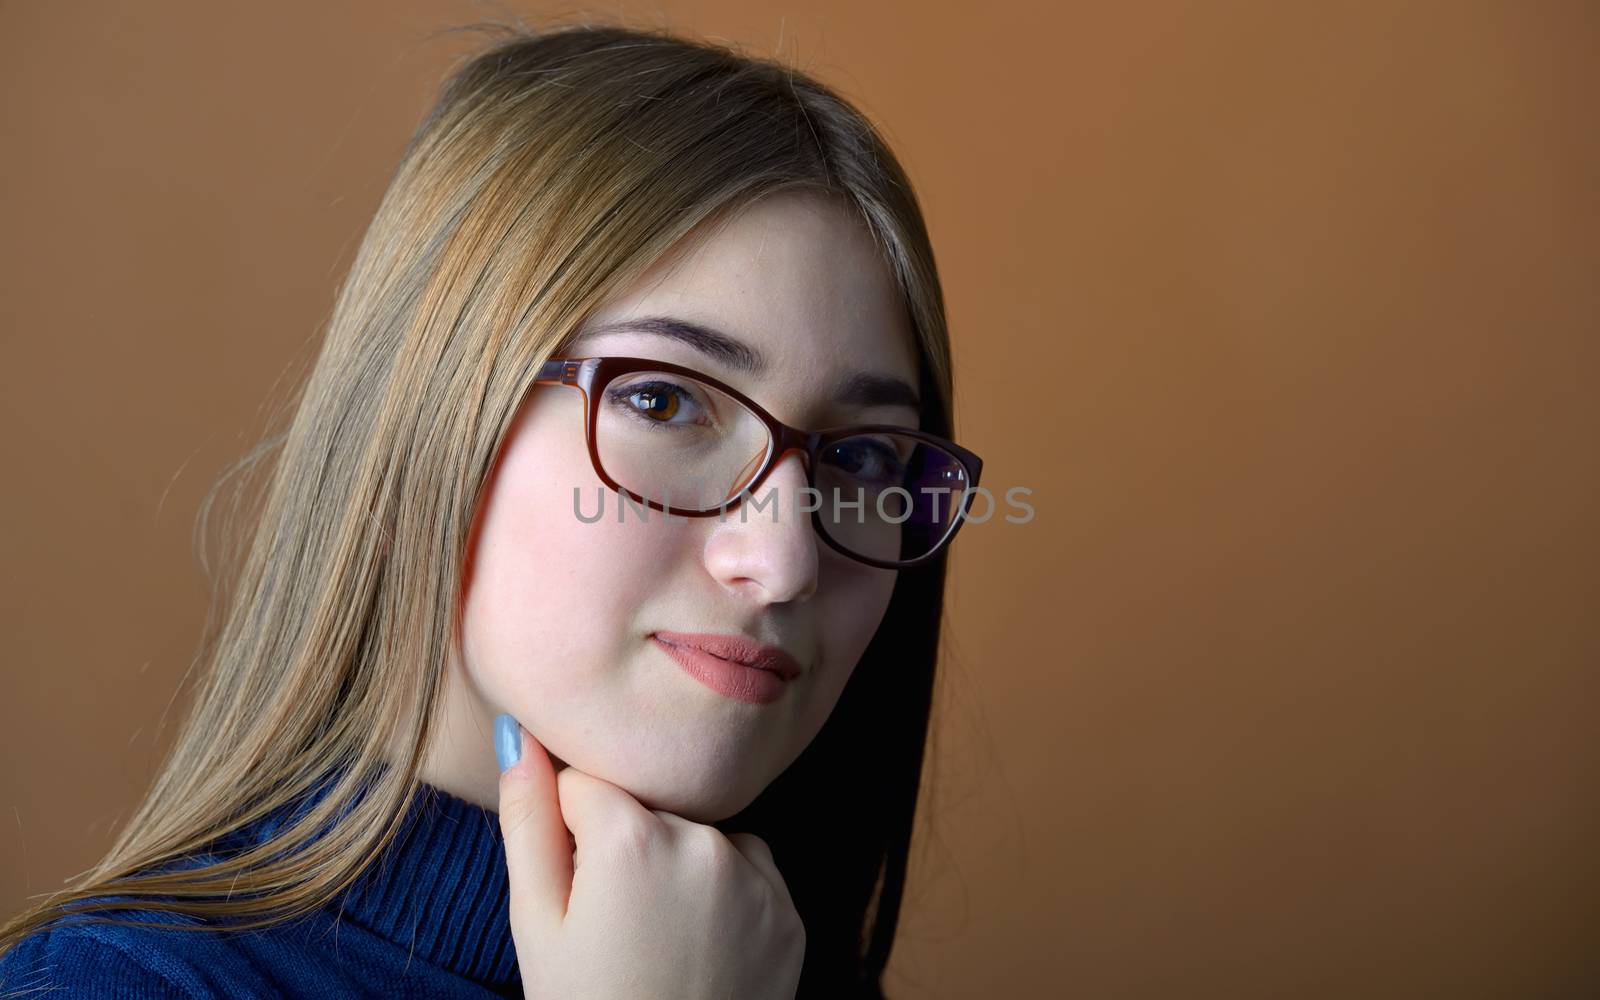 Teen girl portrait shoot in studio